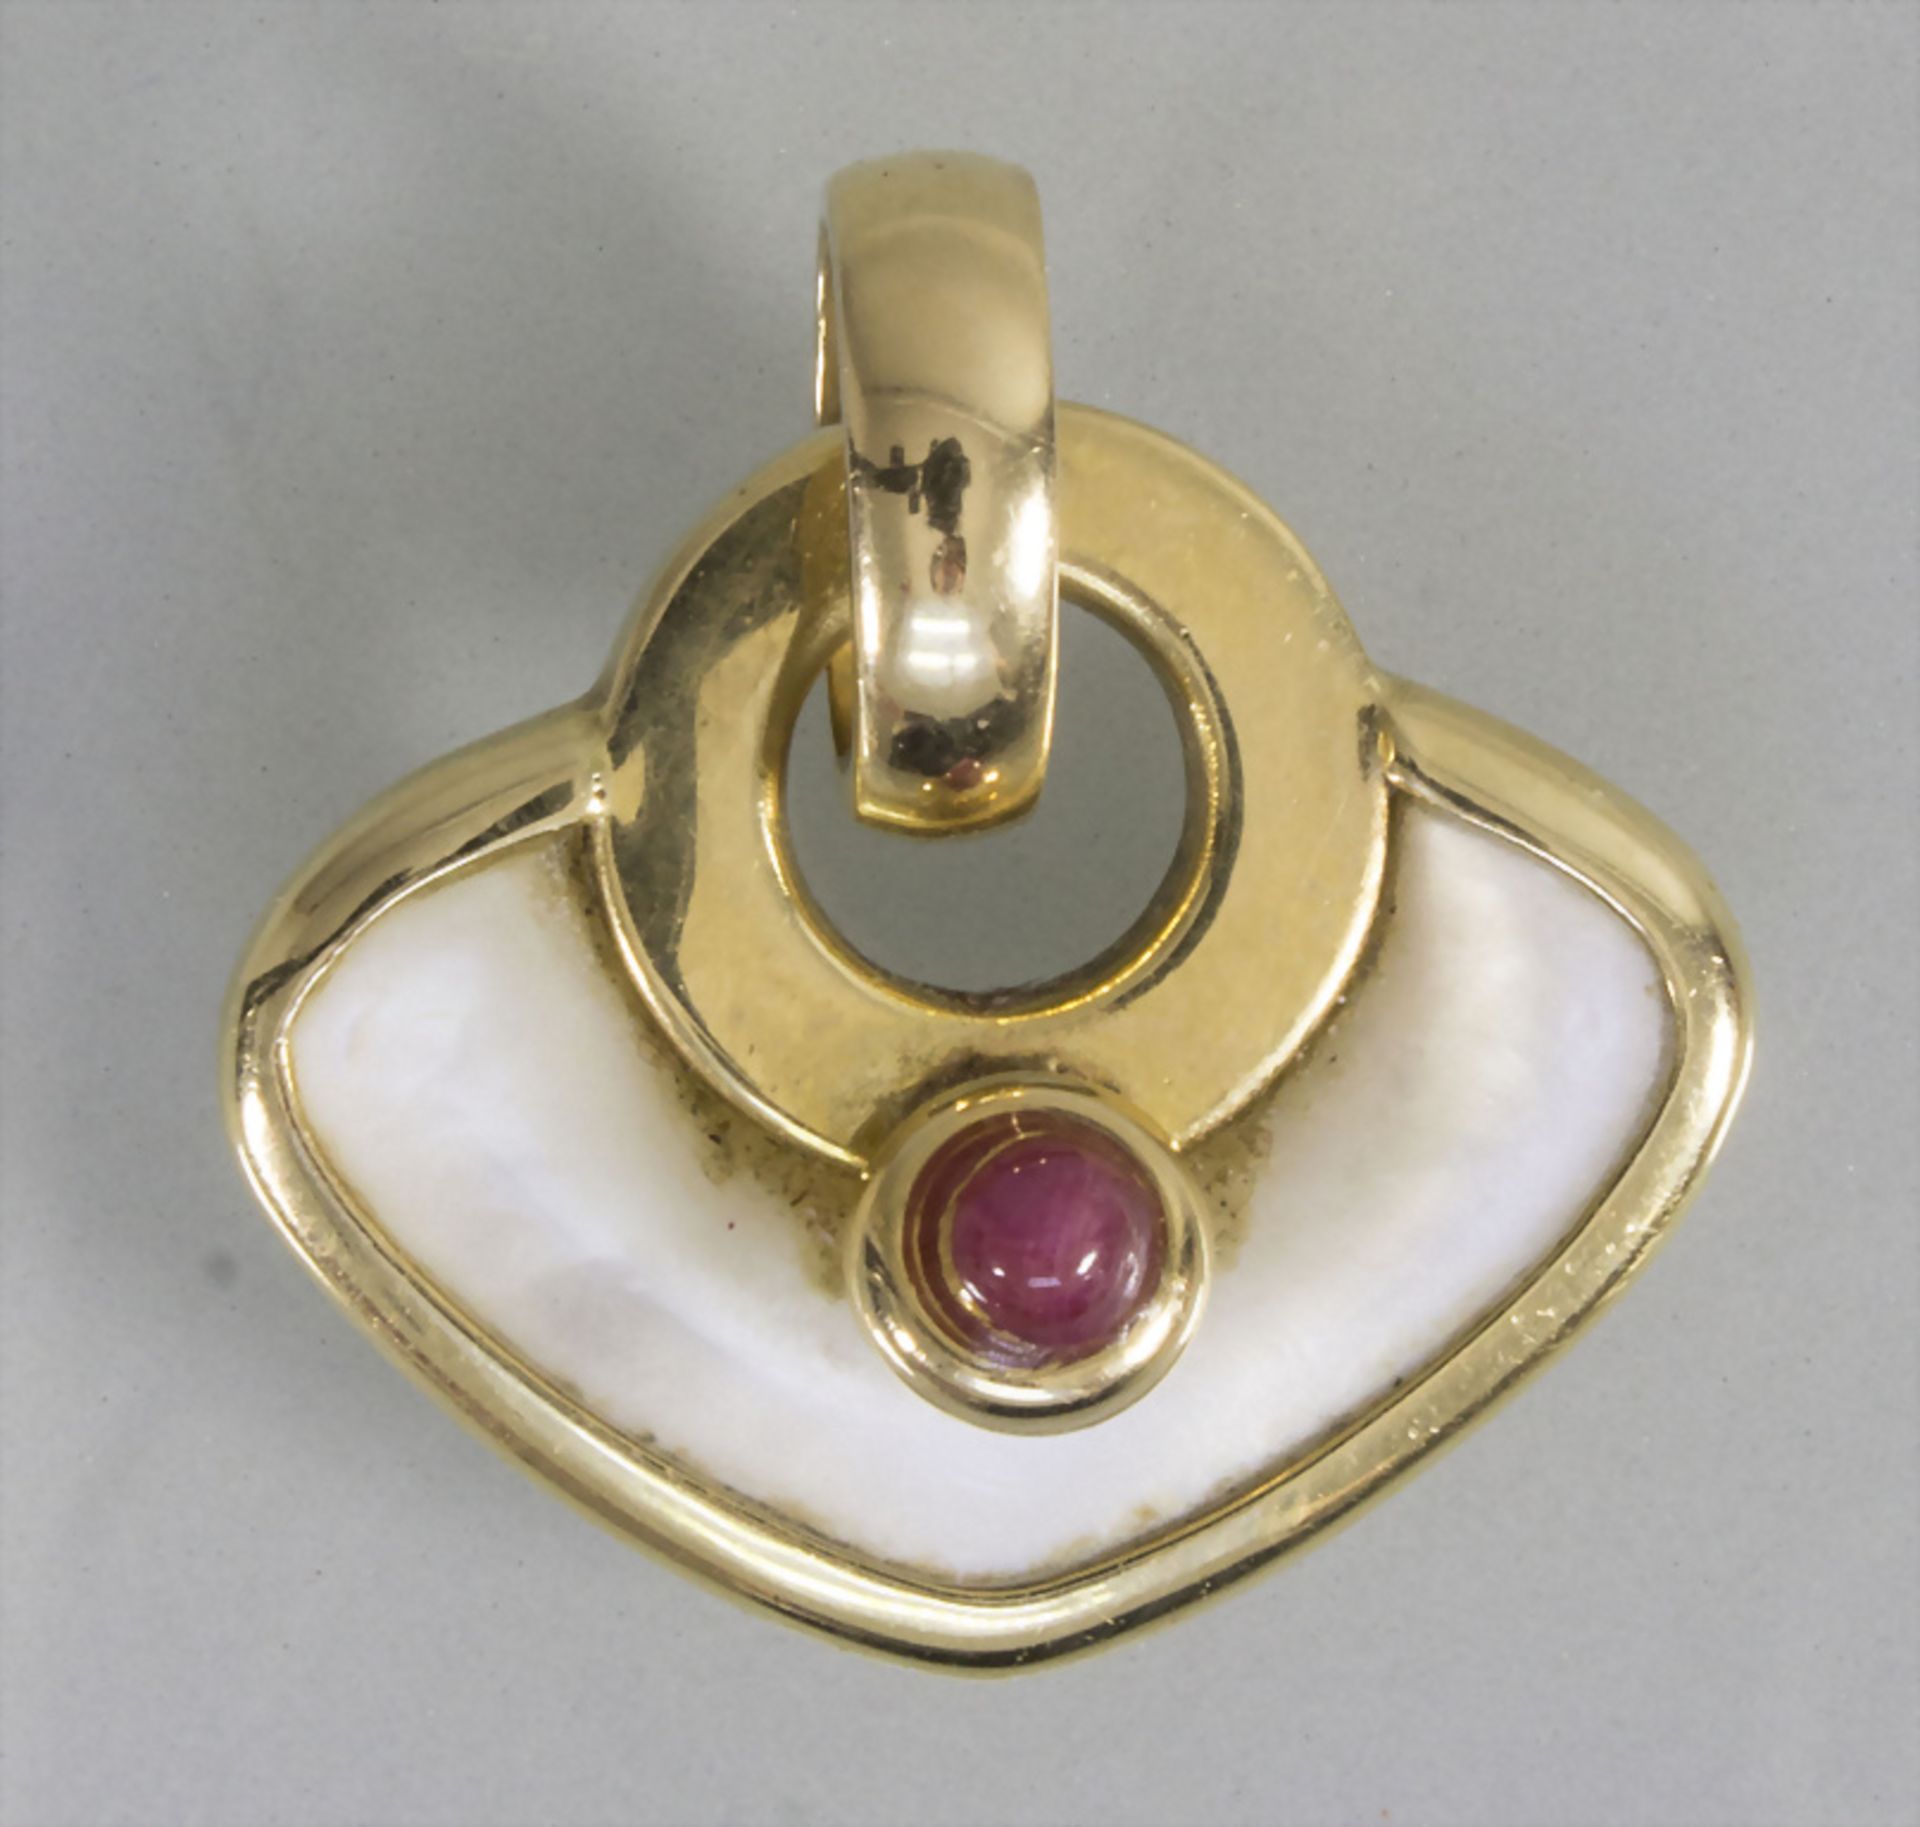 Goldanhänger mit Rubin und Perlmutt / A gold pendant with ruby